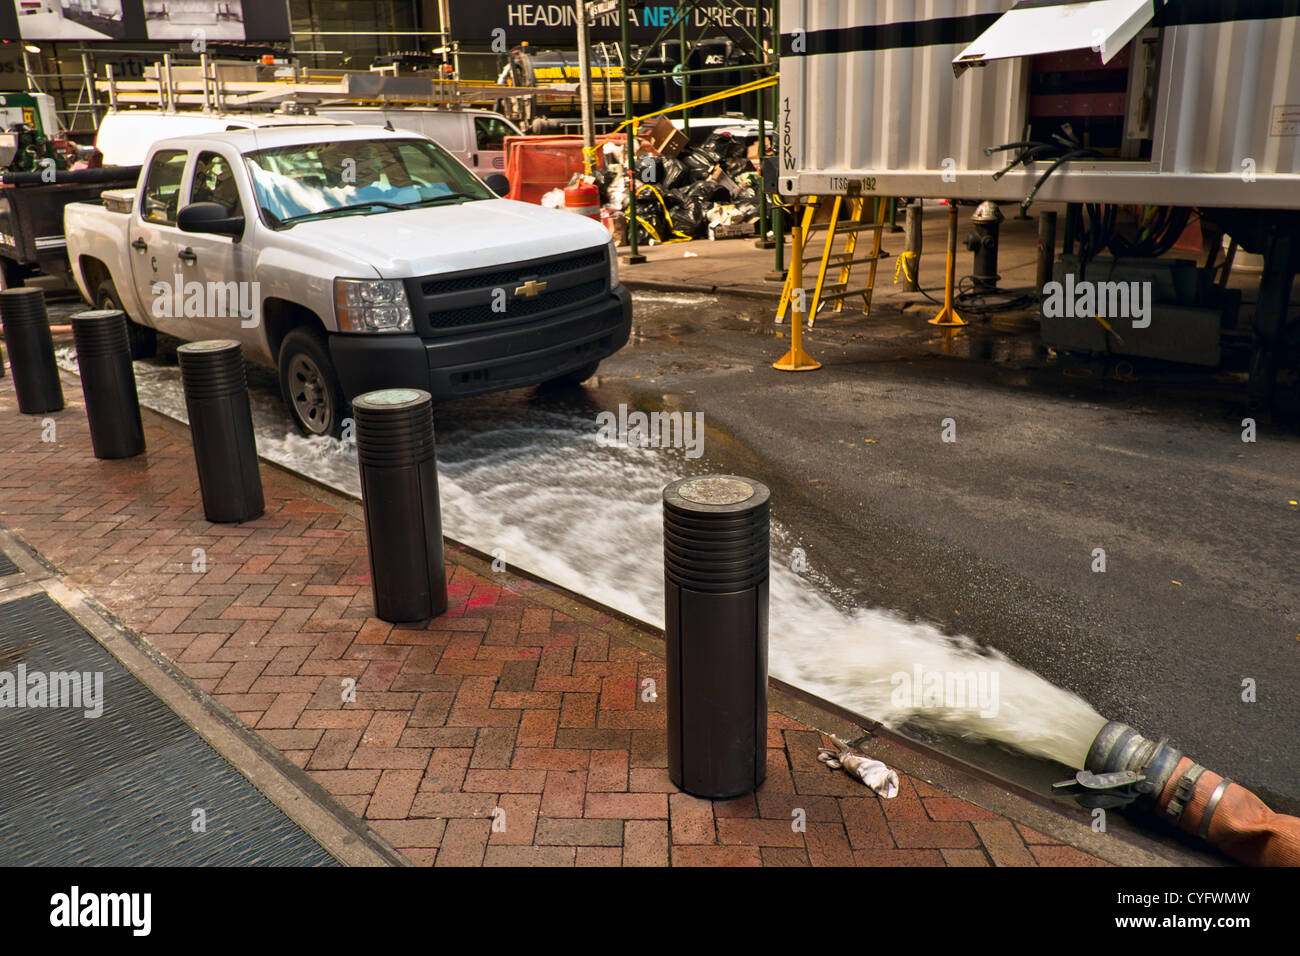 November 3, 2012, New York, NY, USA. Cinque giorni dopo l uragano Sandy allagato Lower Manhattan lavoratori continuare il pompaggio inondazione da edifici nel quartiere finanziario della città. Foto Stock